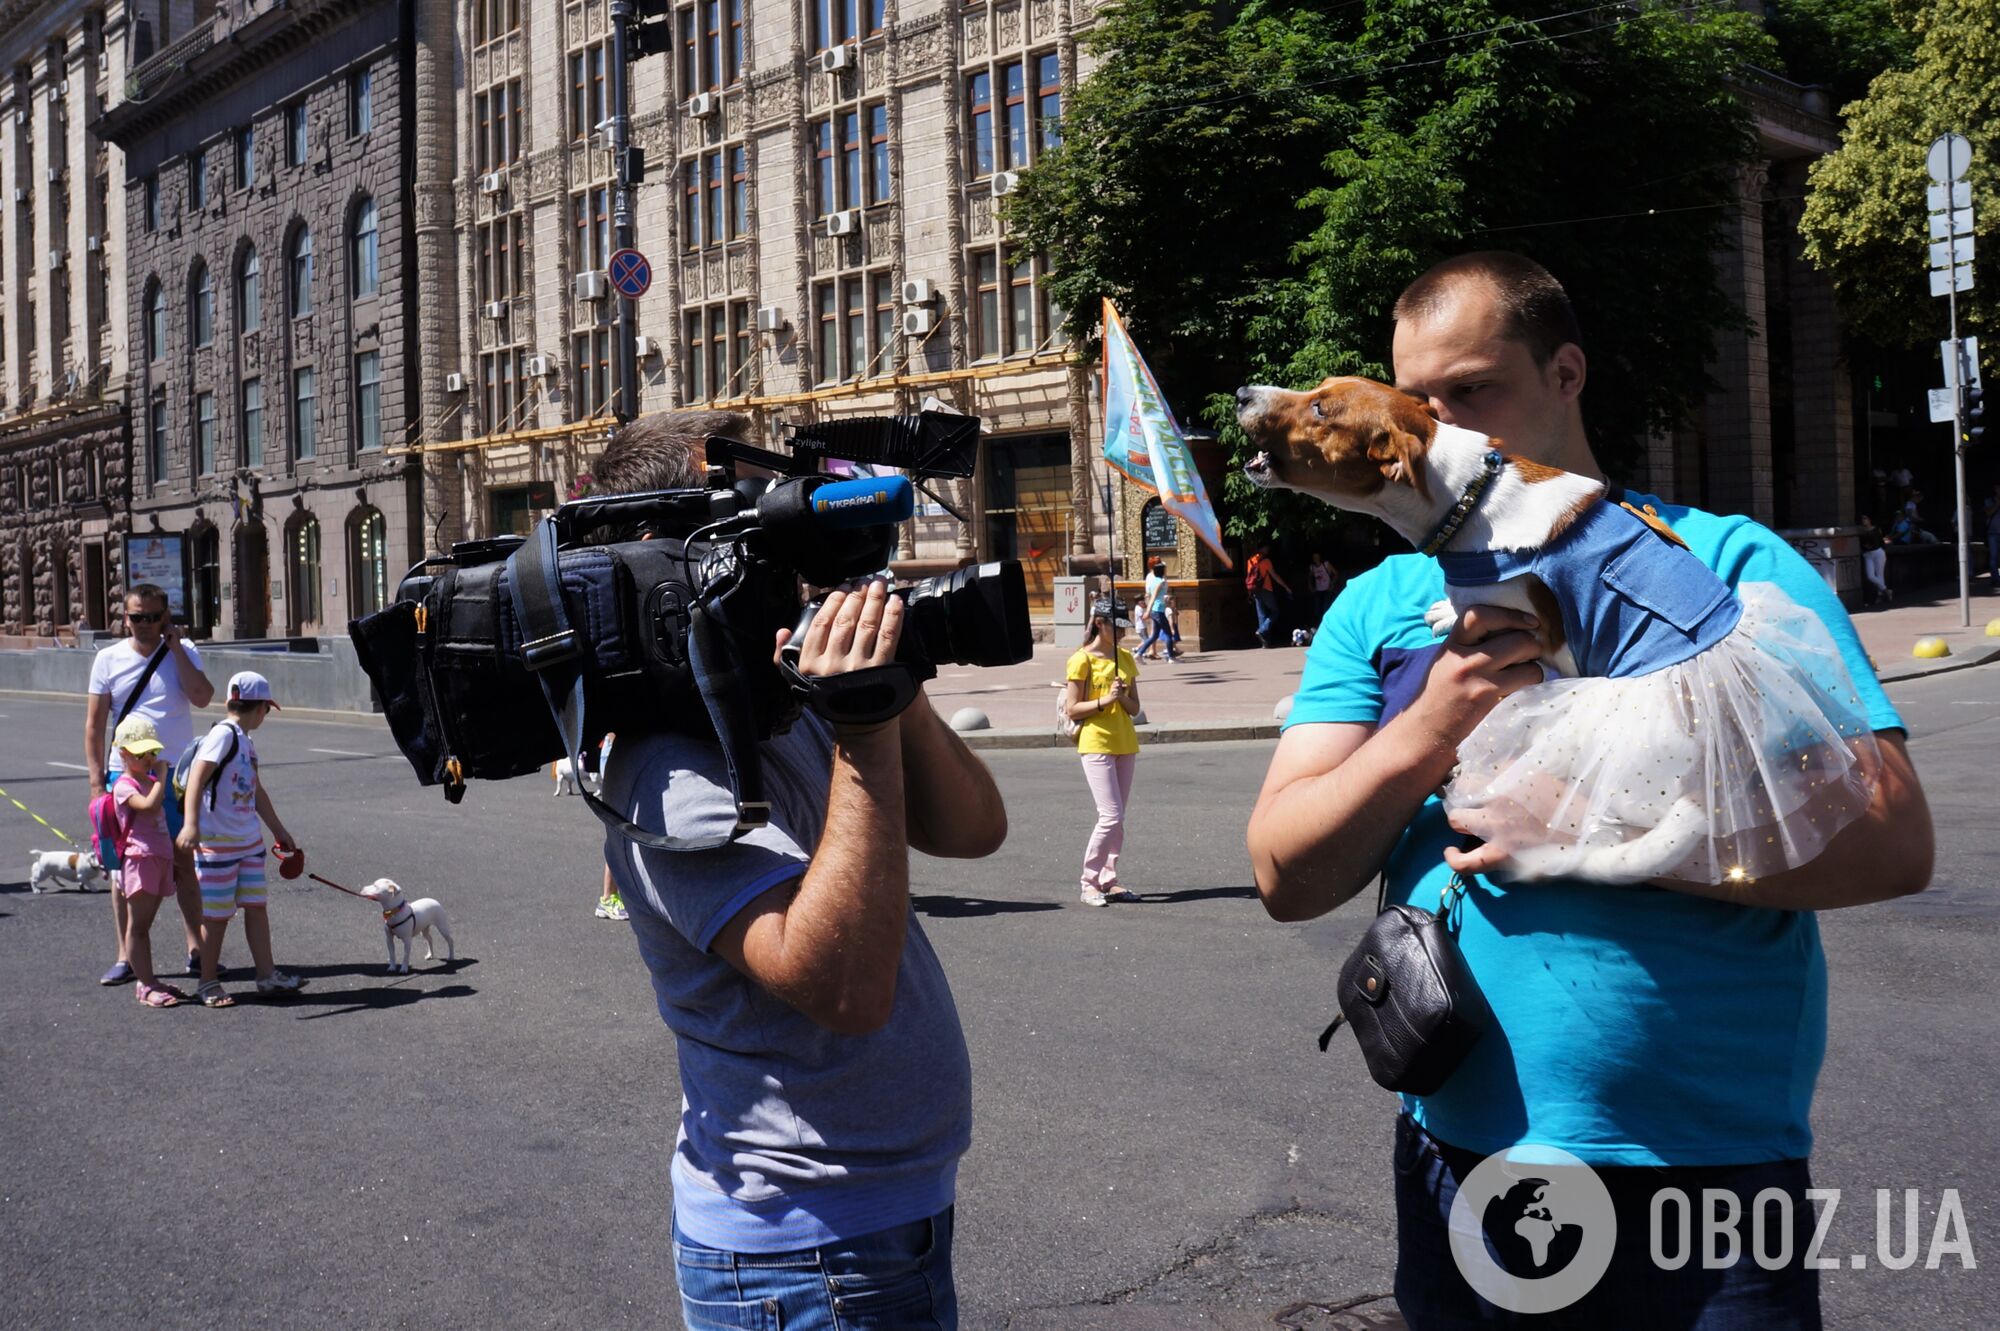 Сотни джек-расселов в центре Киева: яркий фоторепортаж